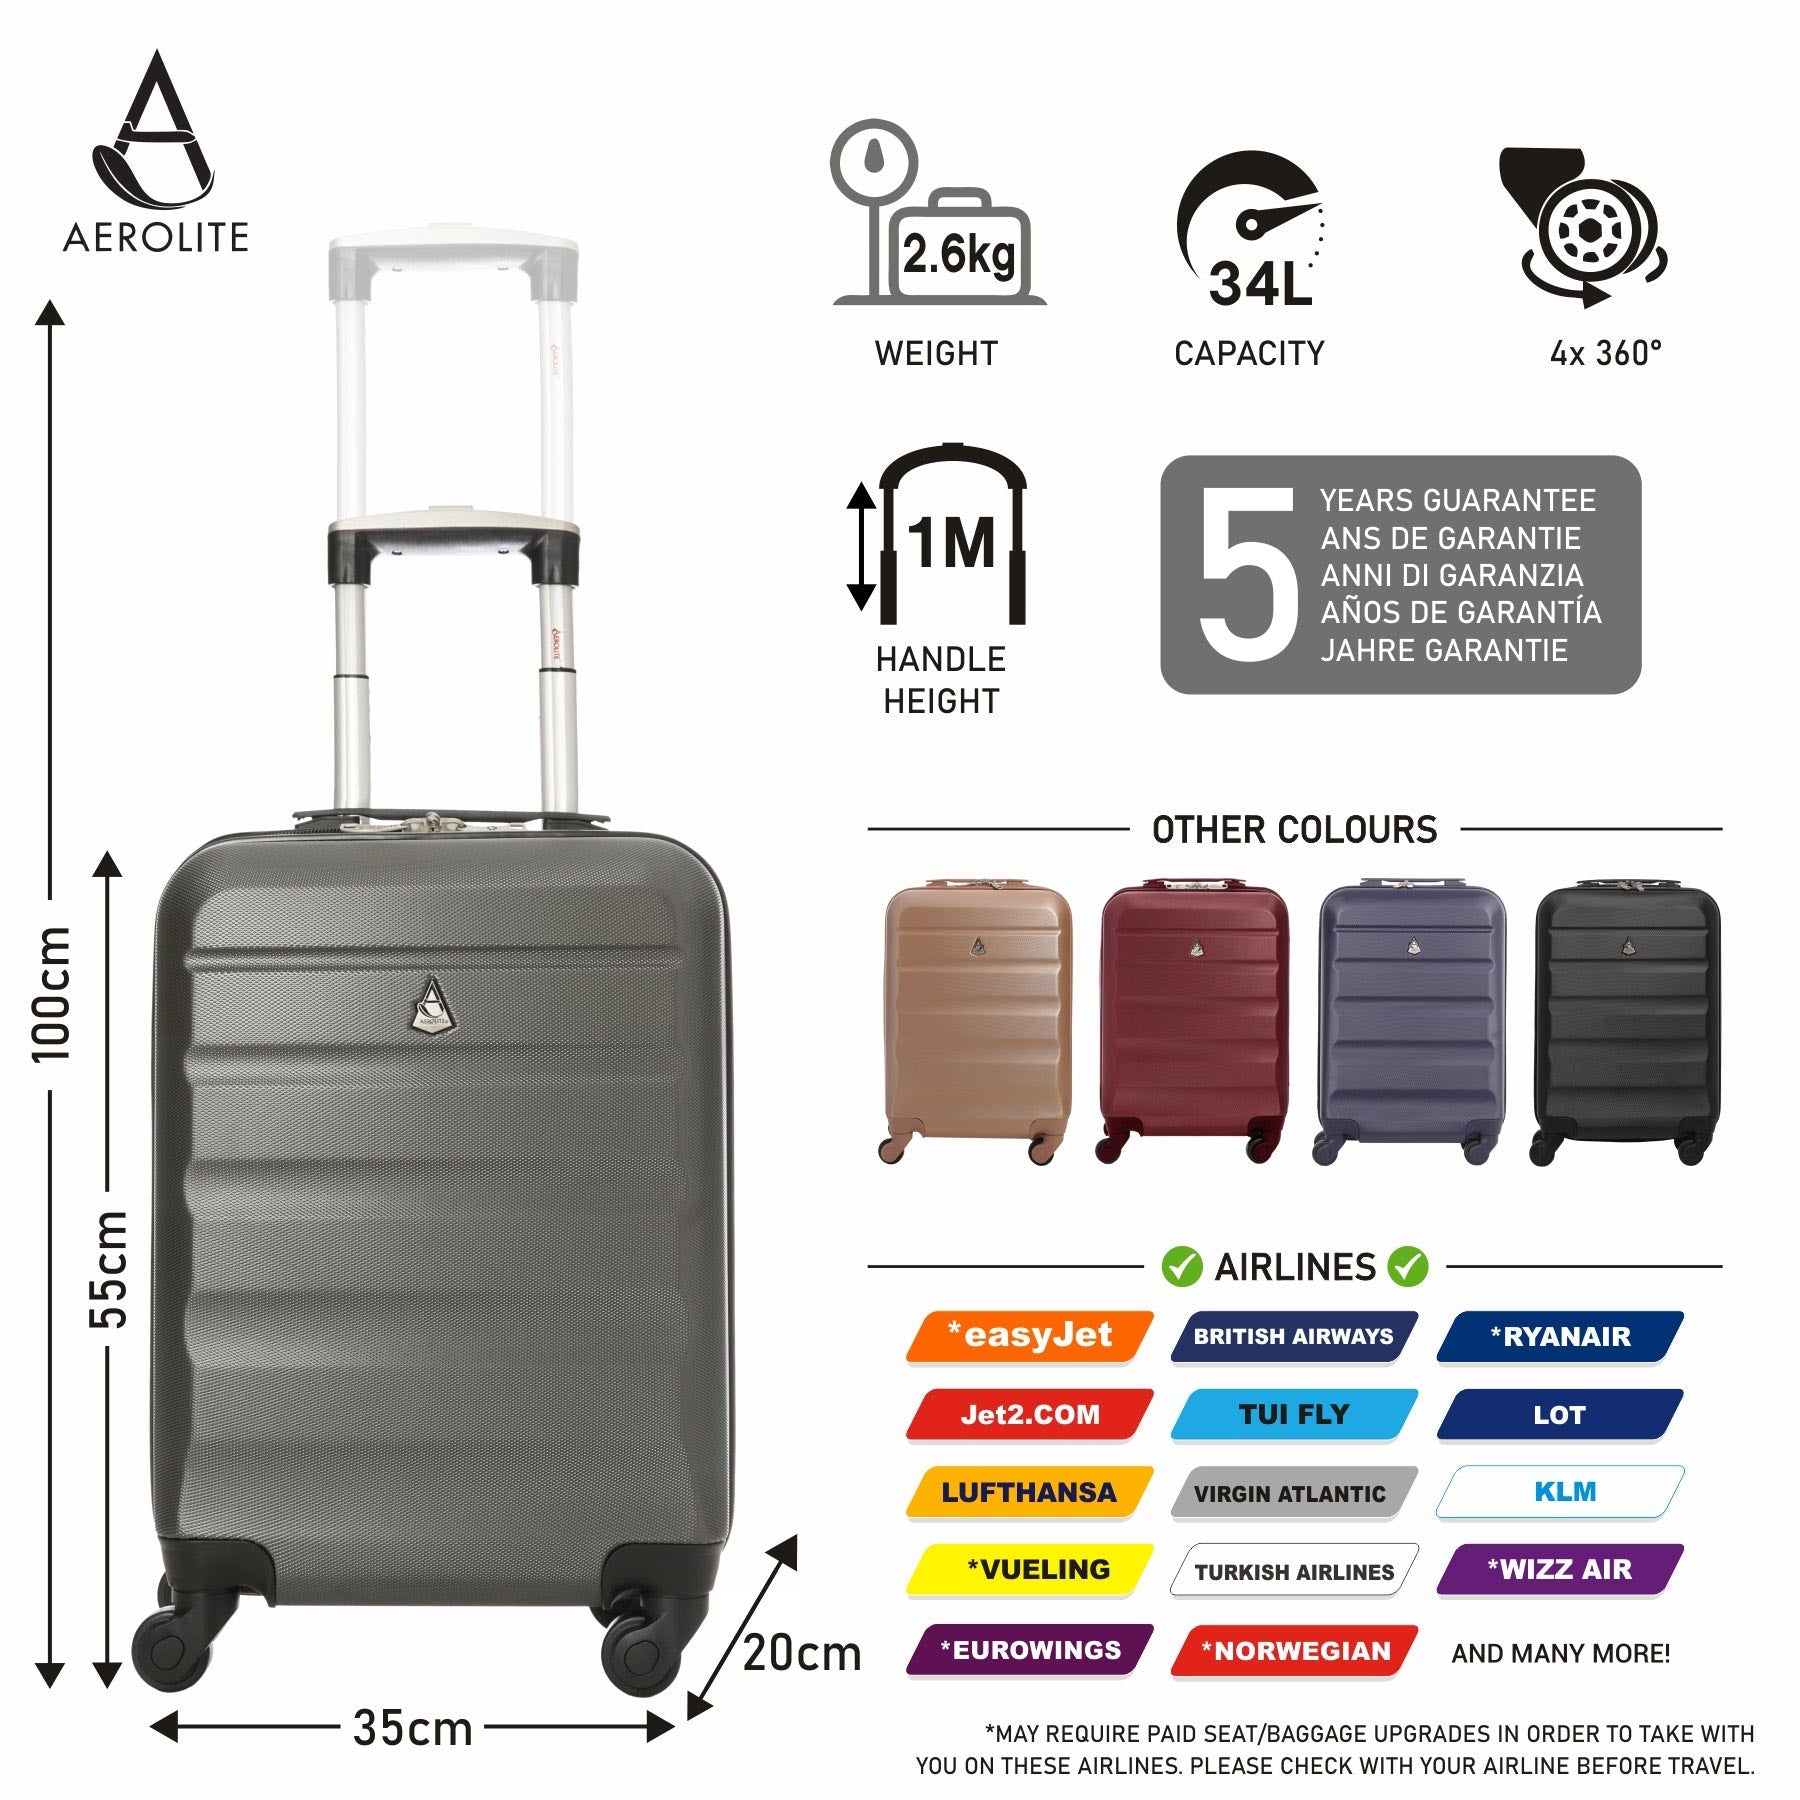 Aerolite Handschalen-Handgepäck-Trolley-Koffer-Set, leichtes ABS (Acrylonitrile Butadiene Styrene), Hartschale, 4-Rad-Trolley-Handgepäck, zugelassen für Lufthansa, Ryanair, Jet2 und viele mehr